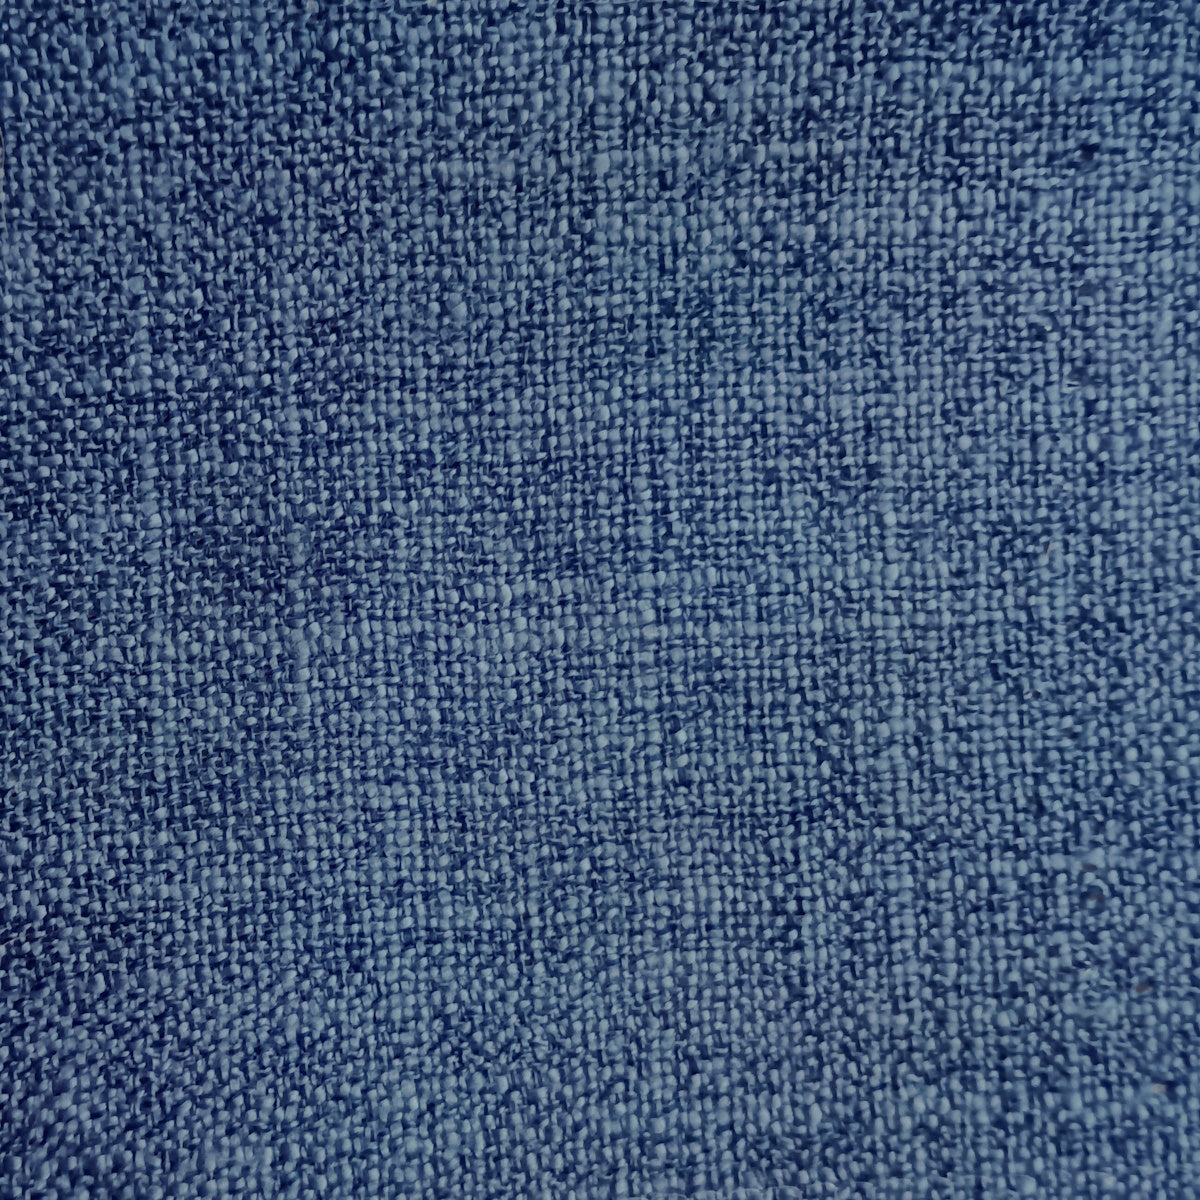 Home décor fabric in Indigo Blue